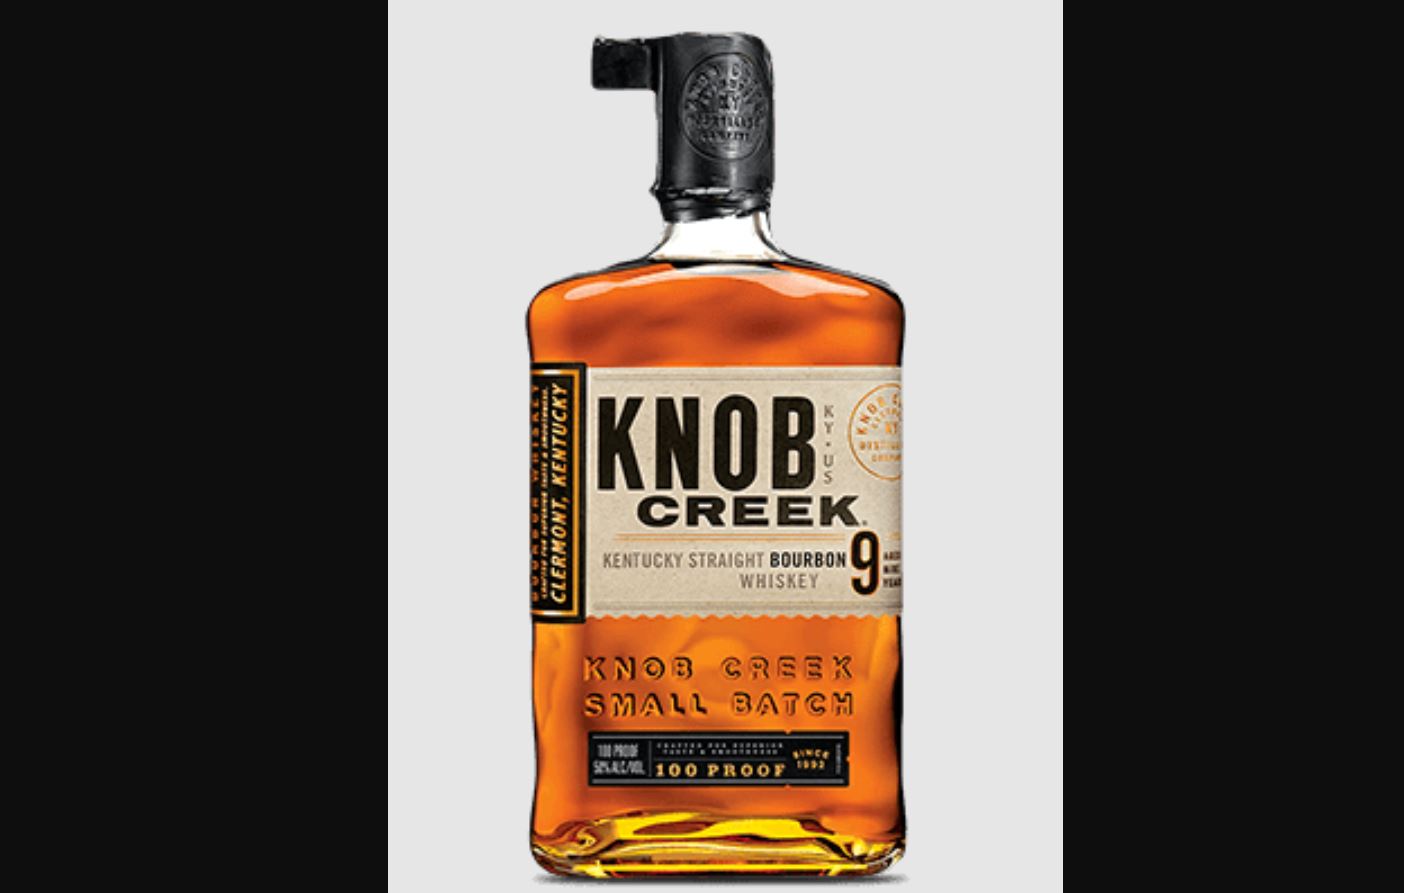 Knob Creek 9